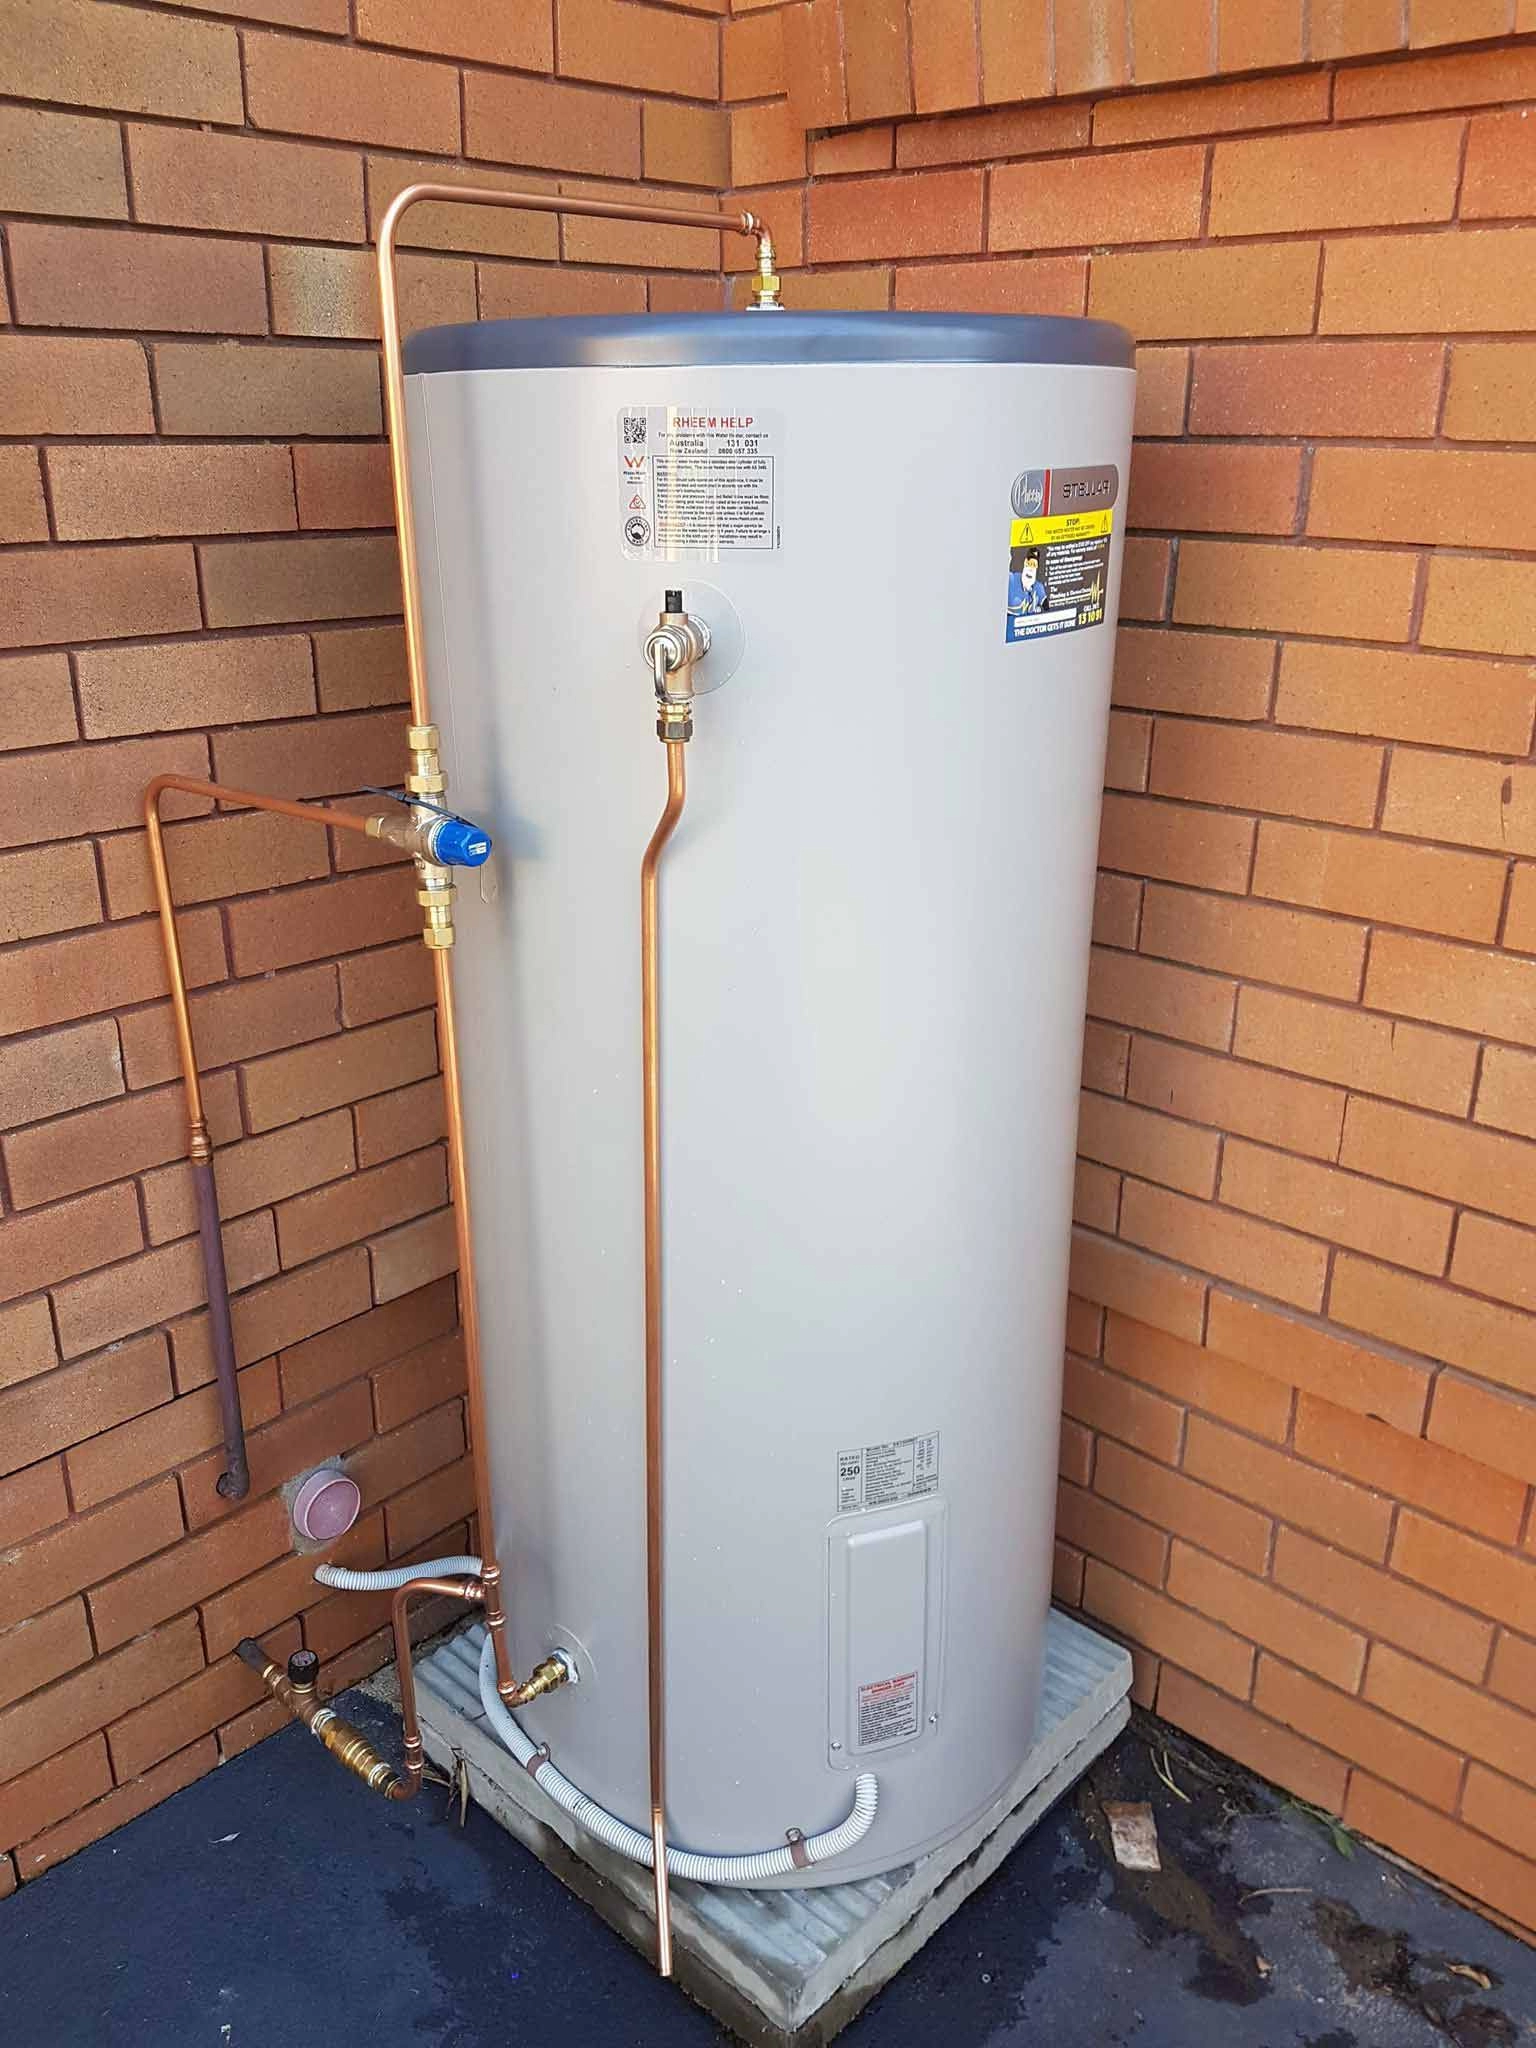 https://proximityplumbing.com.au/upload/image-gallery/gas-vs-electric-hot-water-heater1680843532529.webp